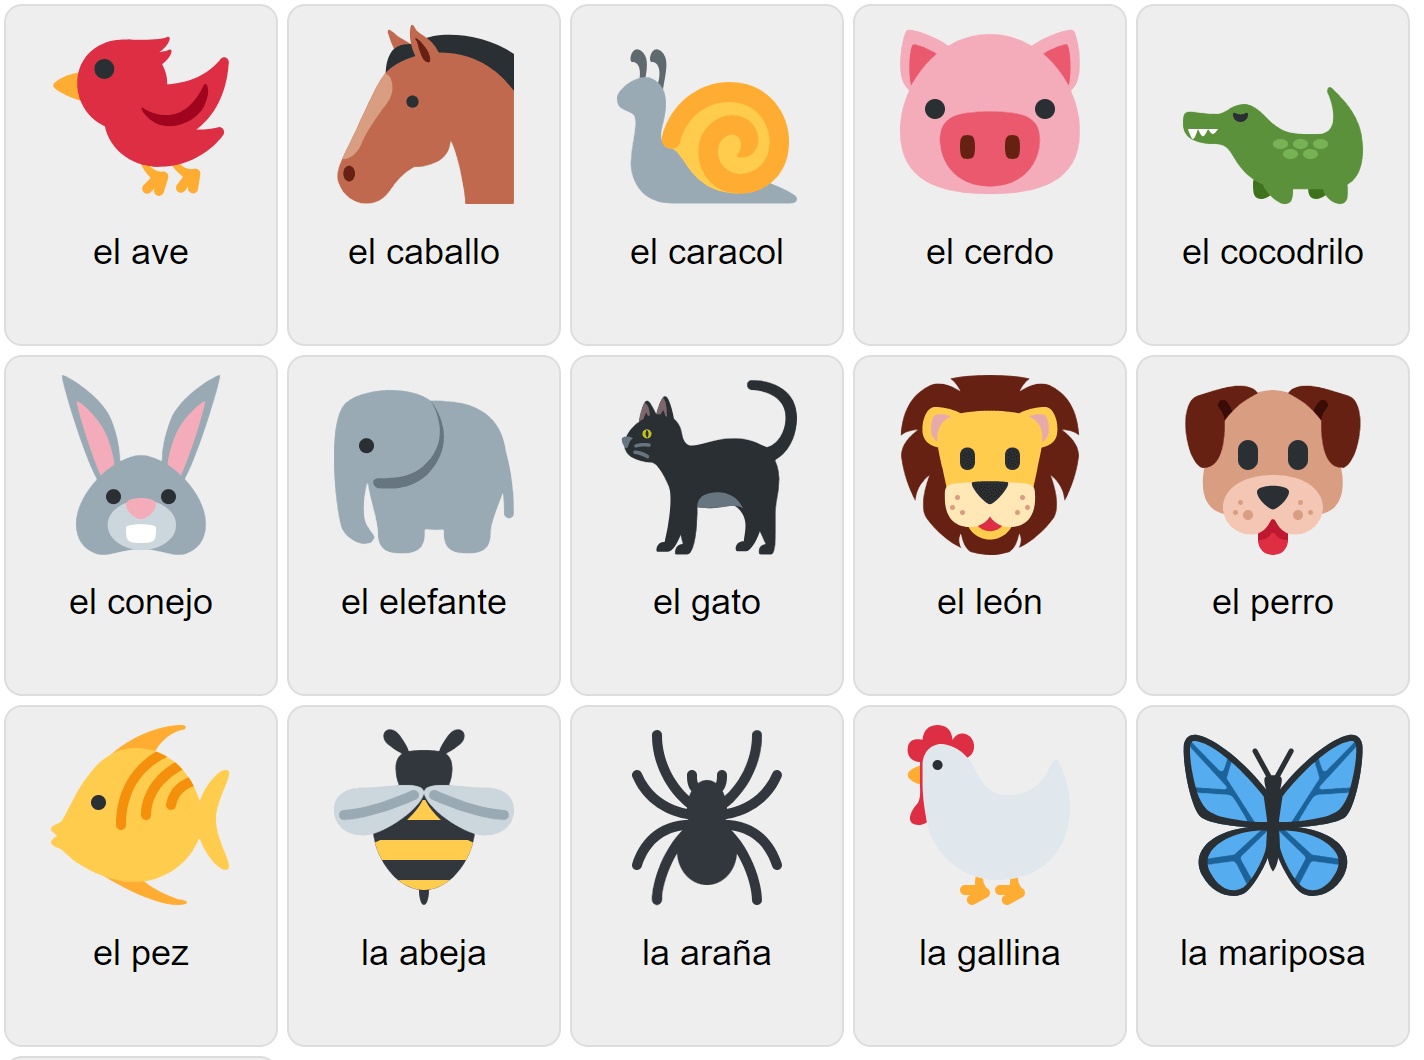 Djur på spanska 1